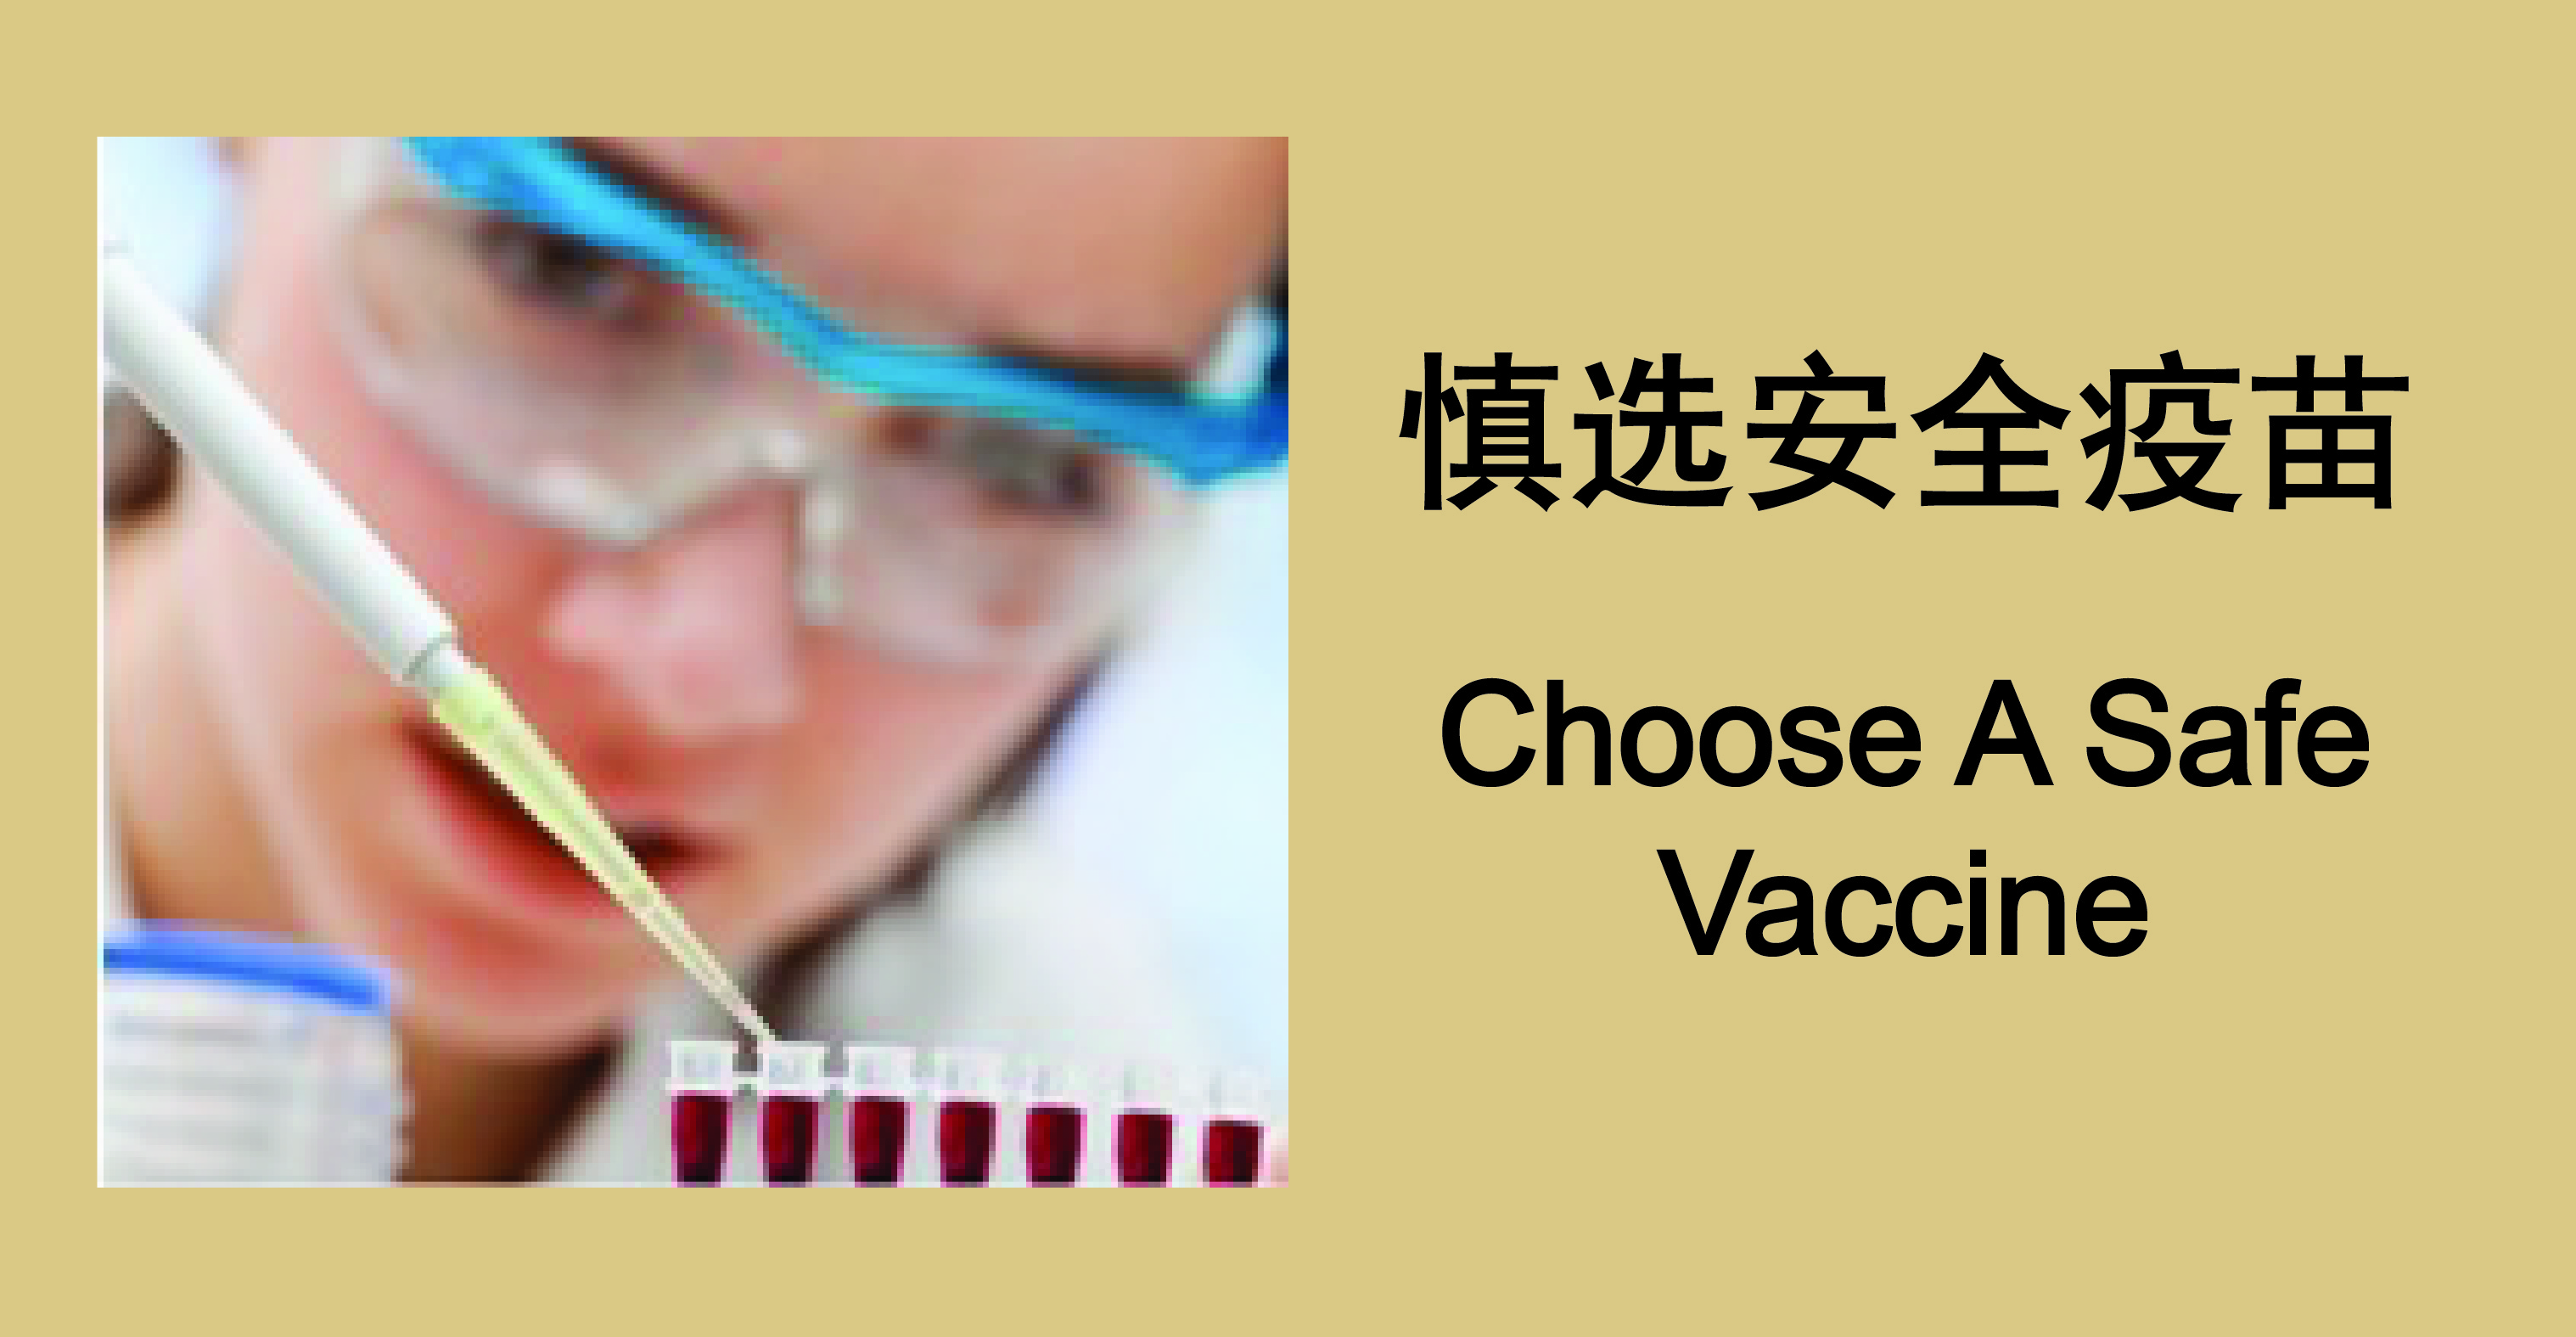 Choose A Safe Vaccine 